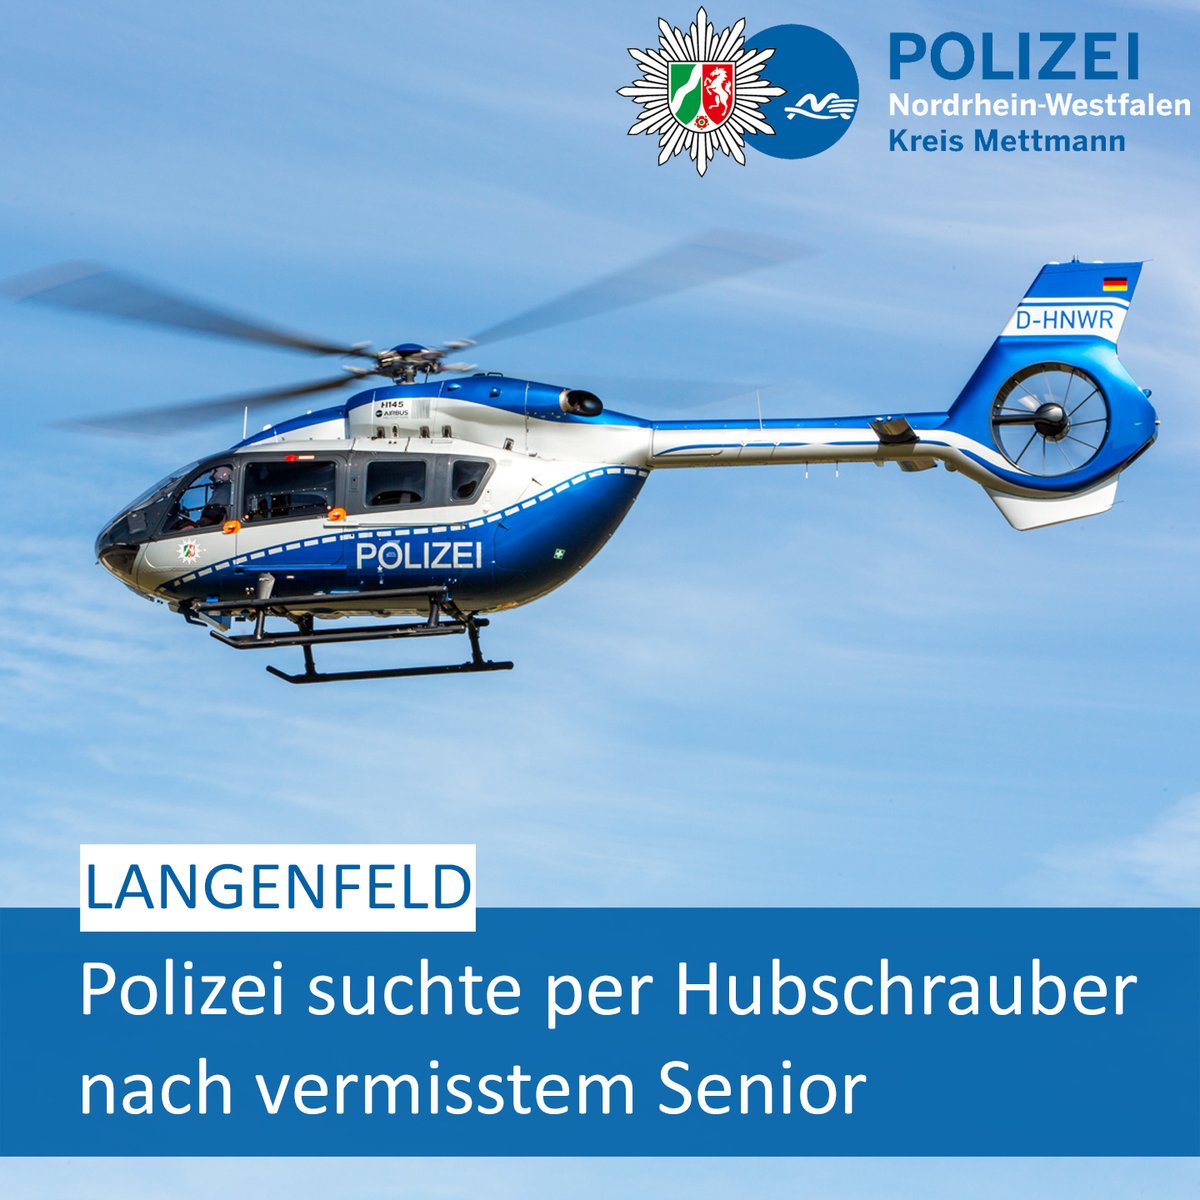 #Langenfeld: Polizei suchte nach vermisstem Senior. ▶️ Hier geht es zu unserer #Pressemeldung: 📝 fcld.ly/tq8be30. #PolizeiME👮‍♂️